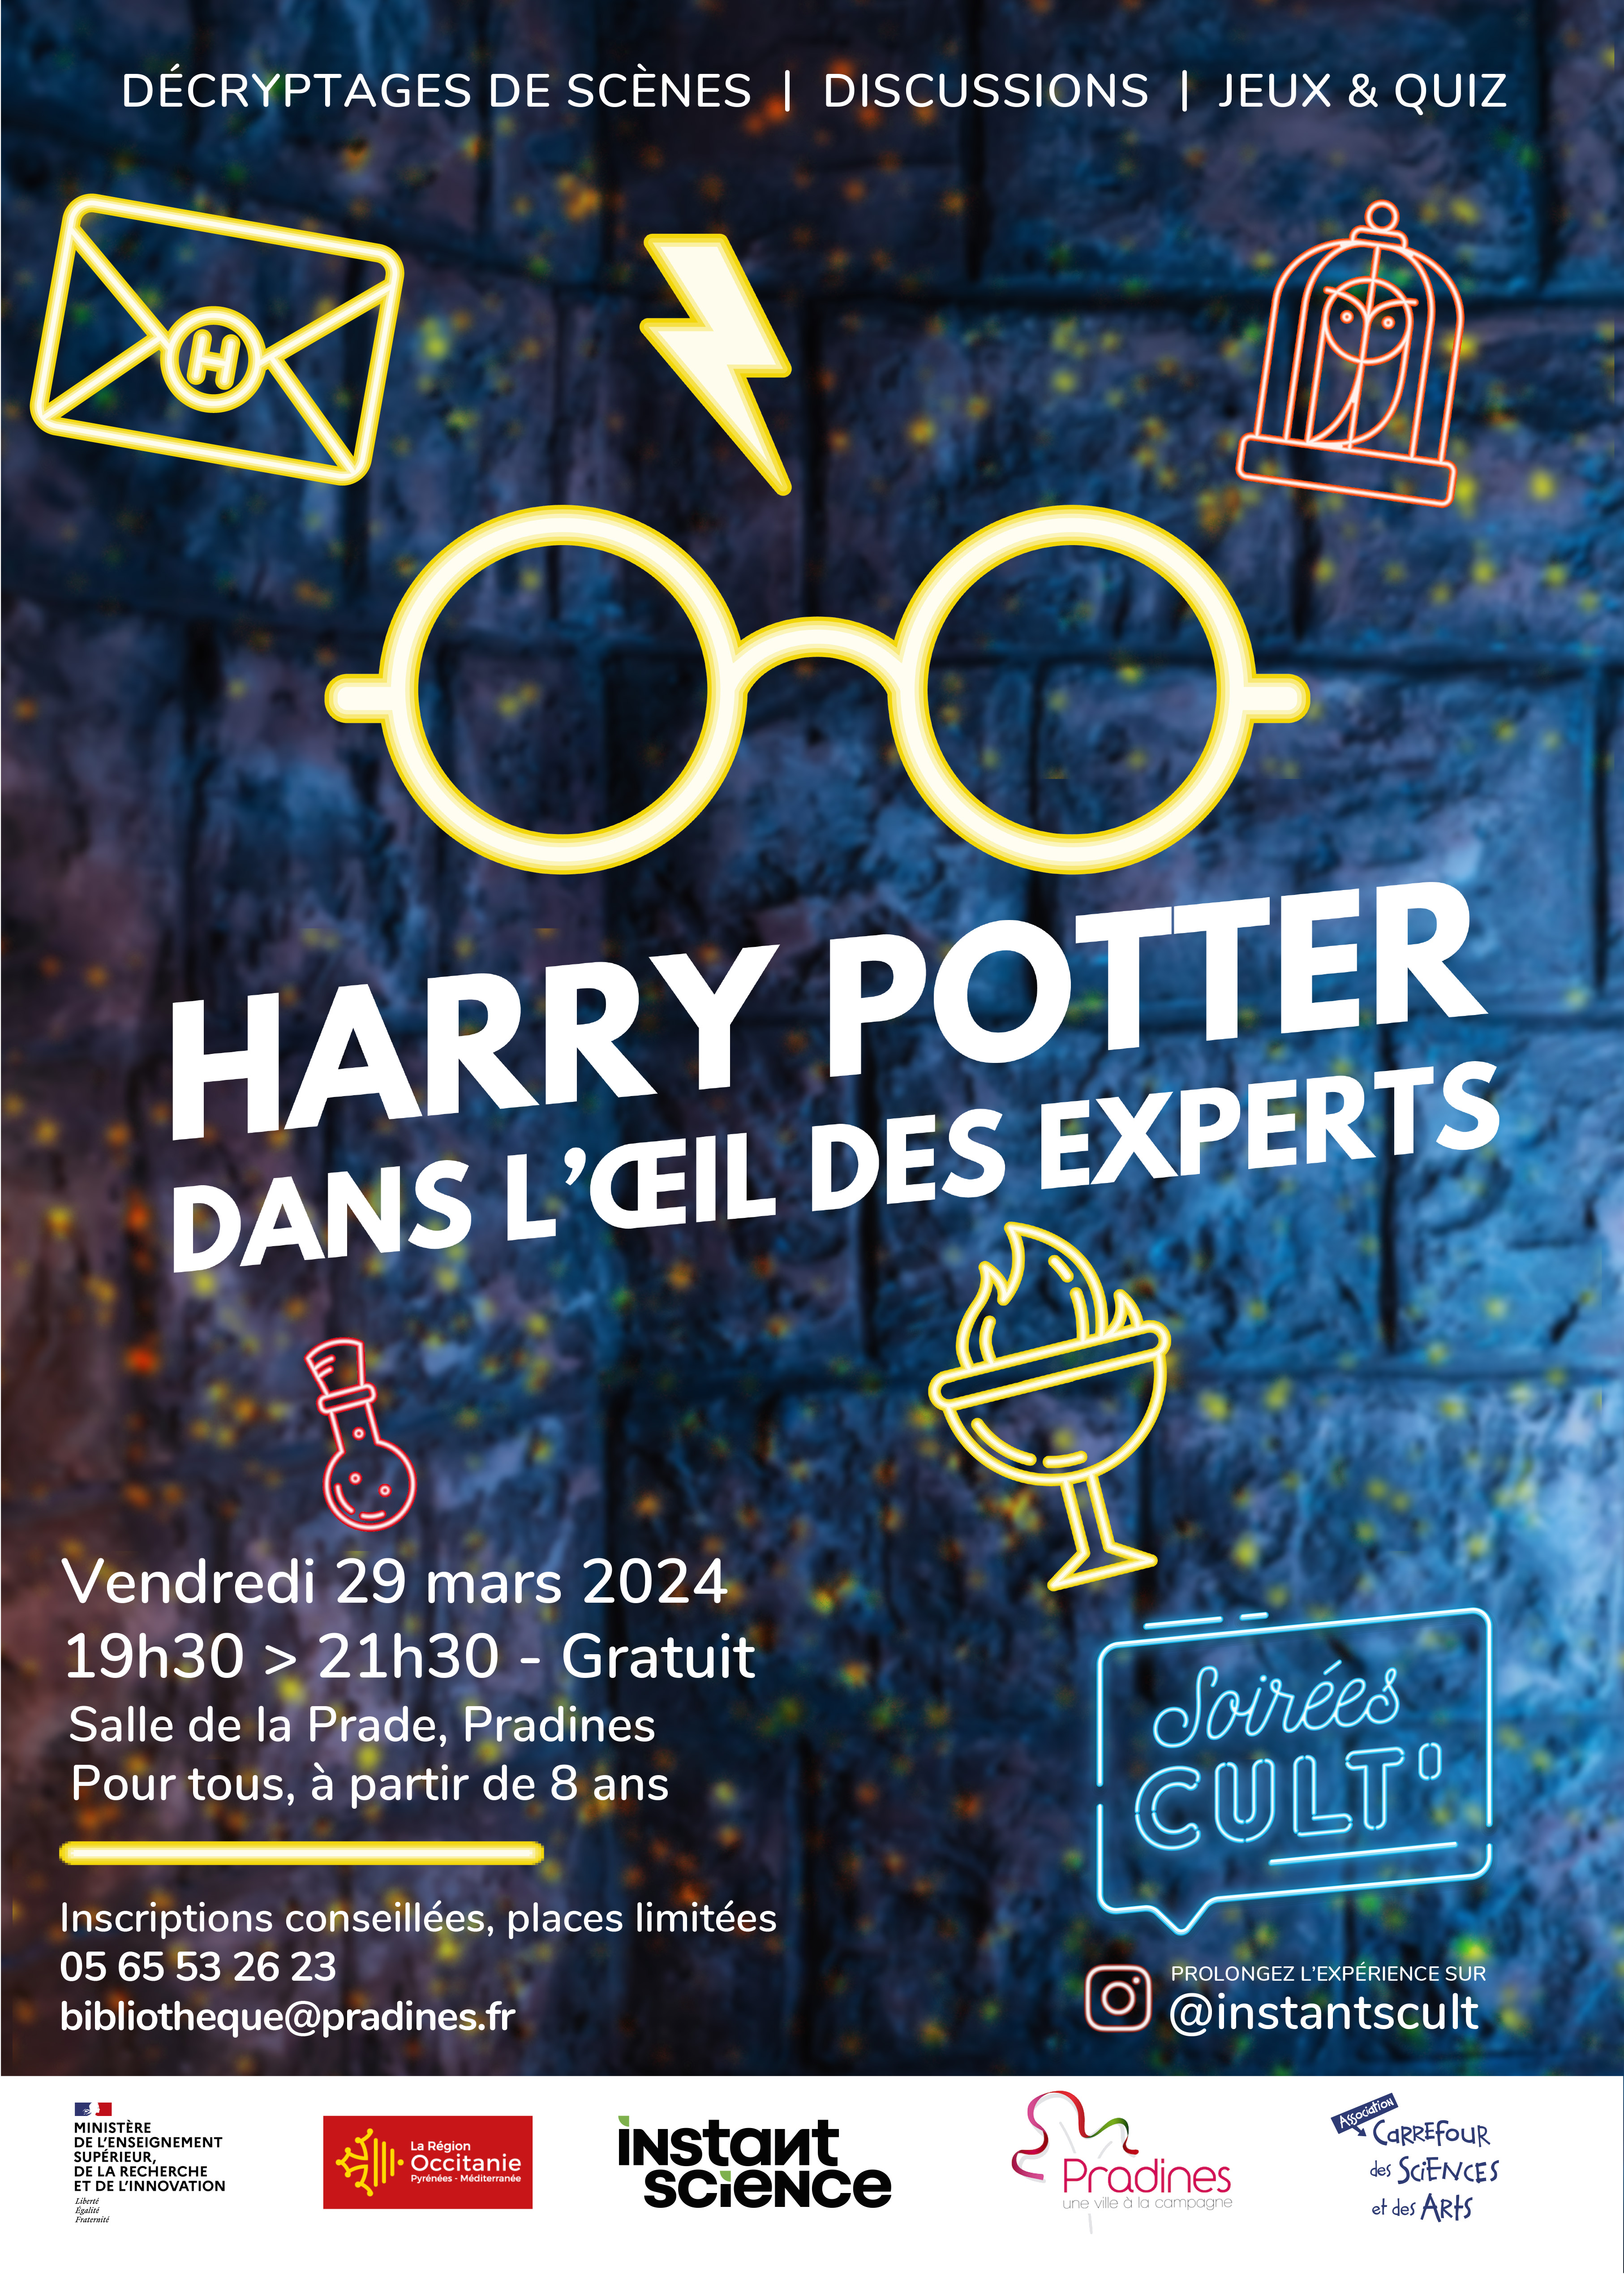 Soirée Cult’ : Harry Potter, dans l’œil des experts avec le Carrefour des sciences